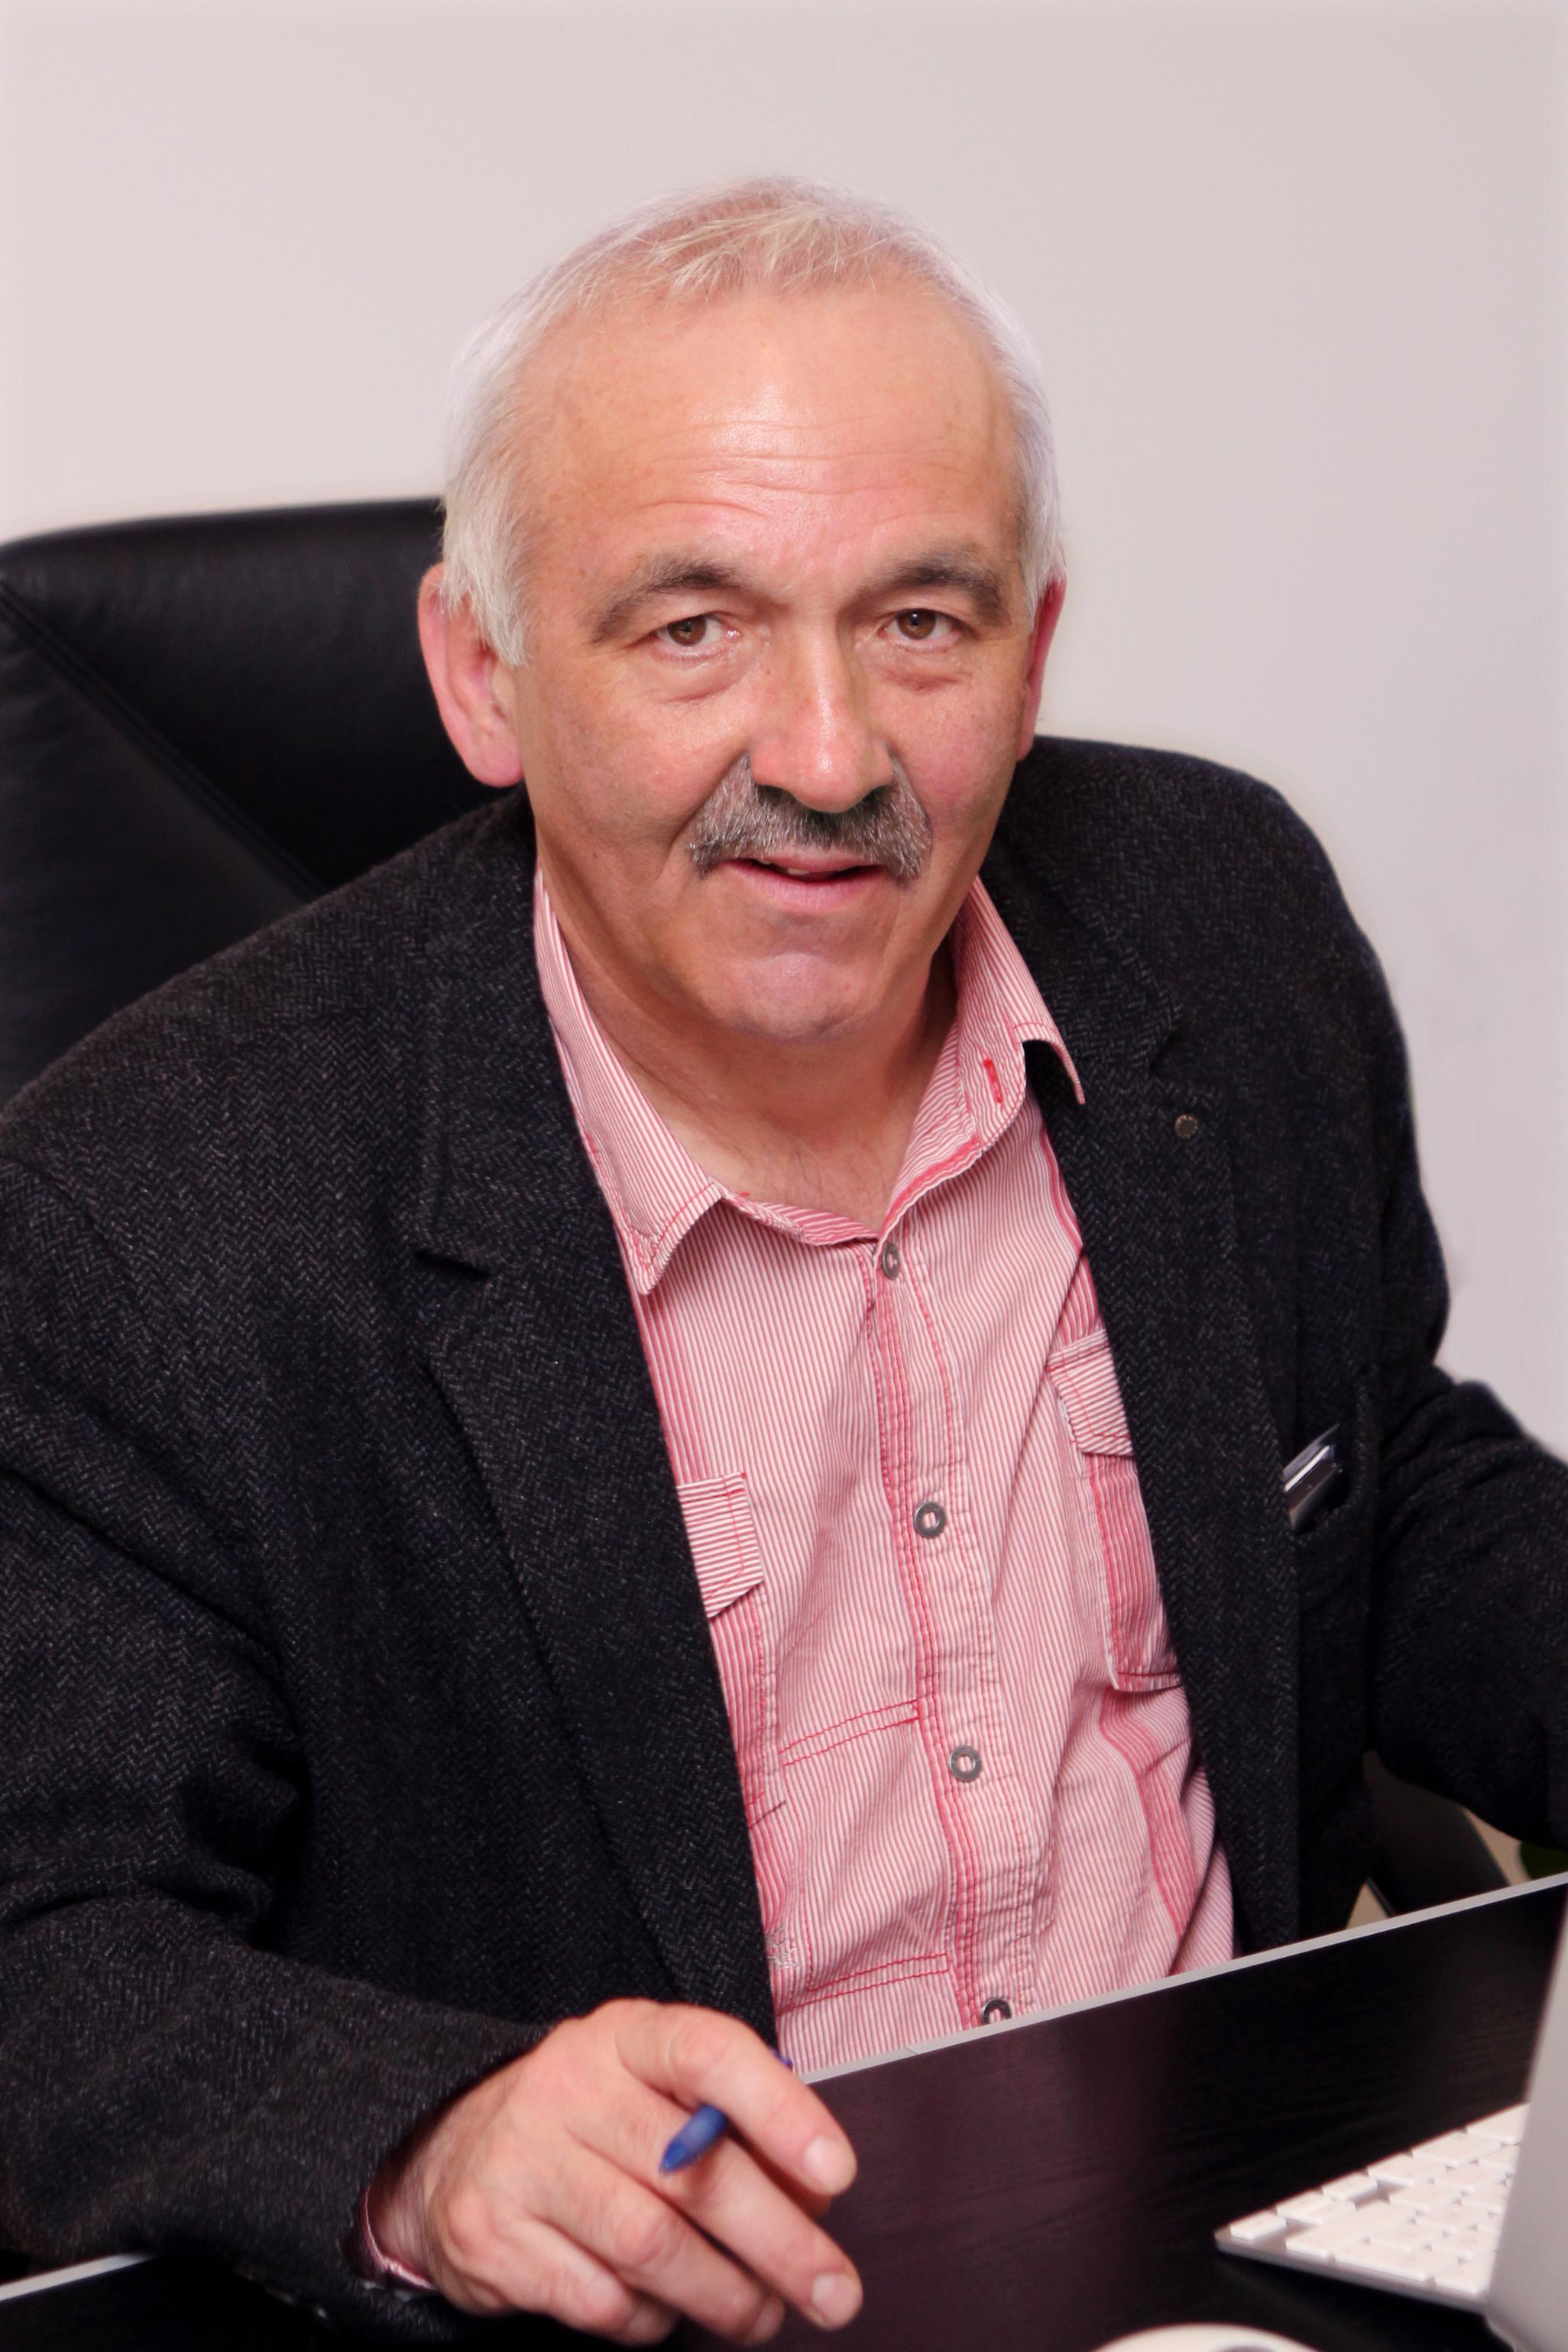 László Szőke, Former CEO Of Budapest Spa